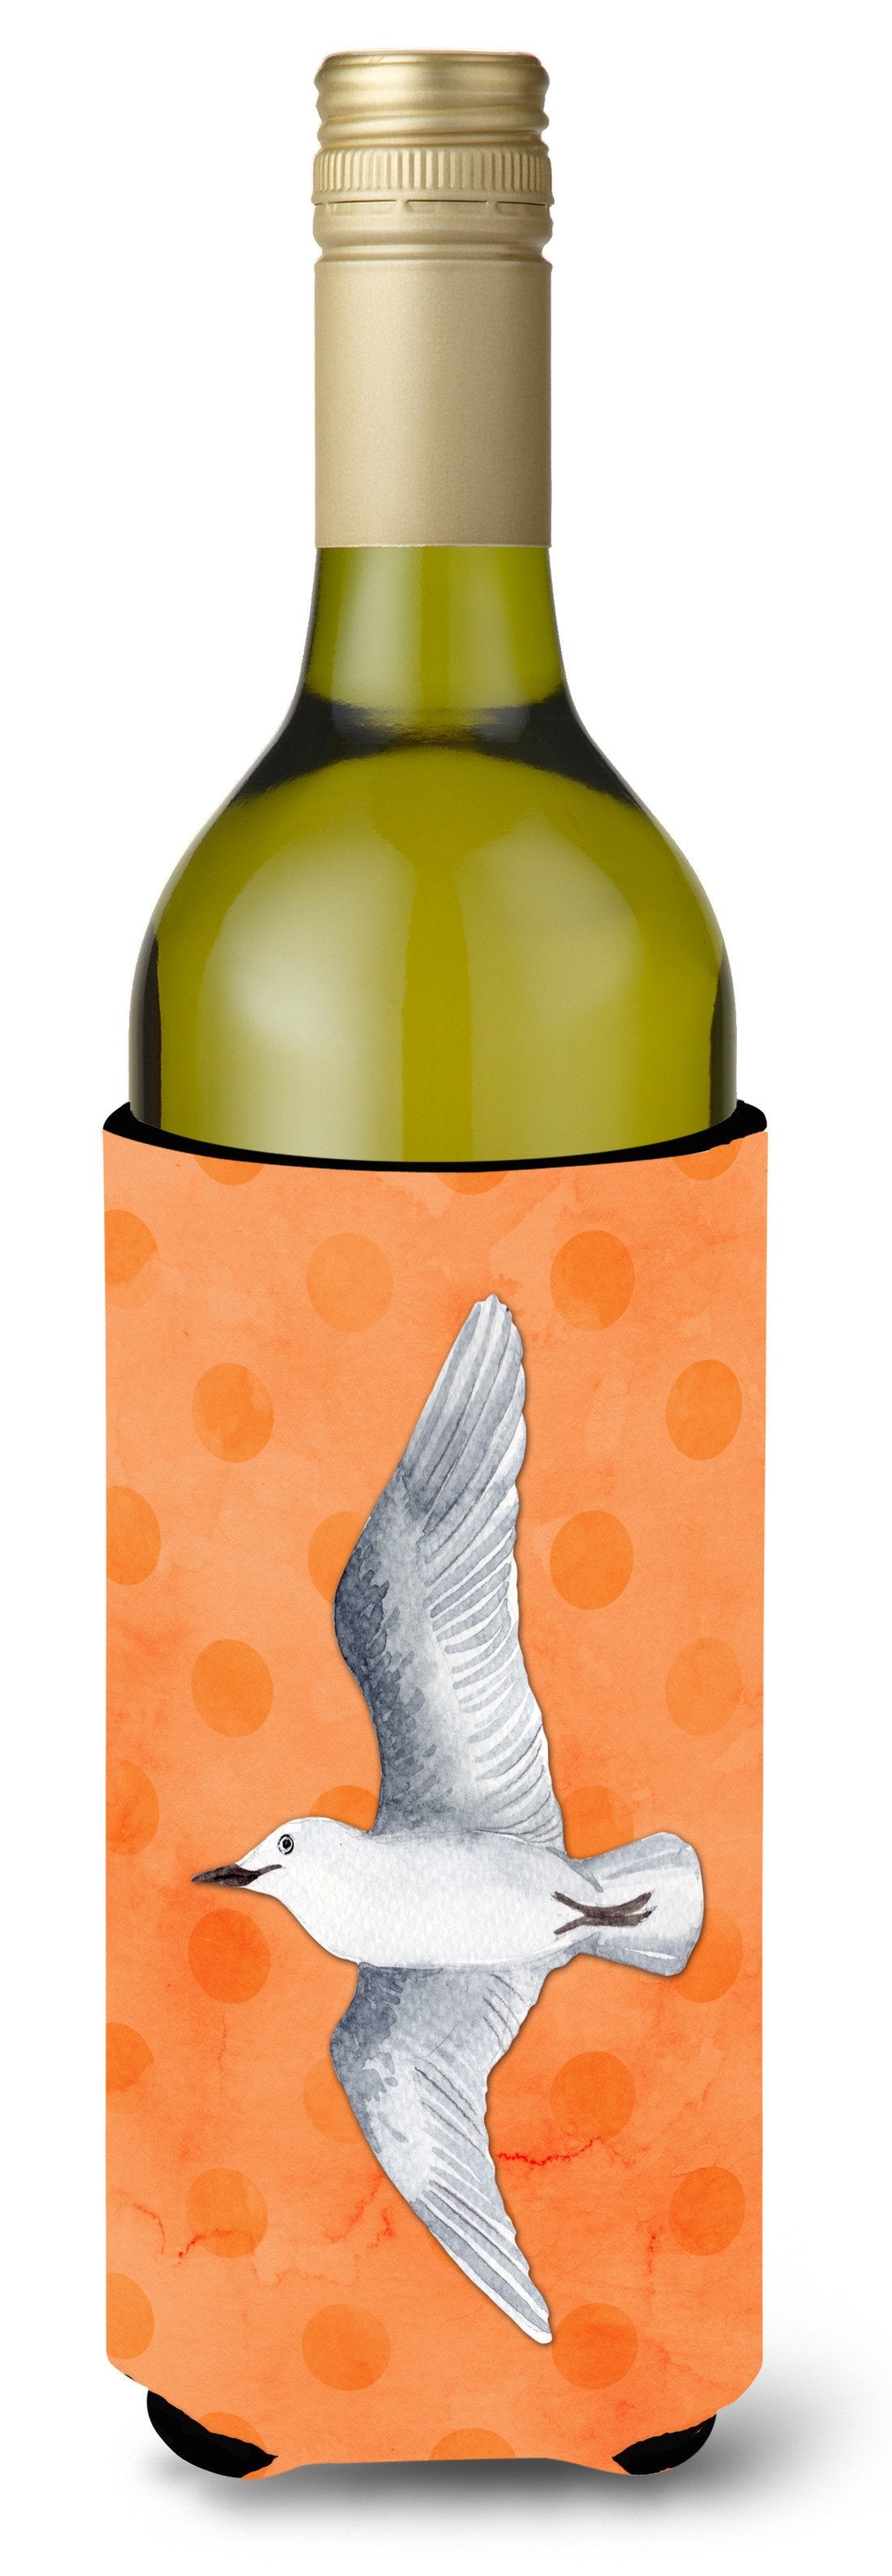 Sea Gull Orange Polkadot Wine Bottle Beverge Insulator Hugger BB8228LITERK by Caroline's Treasures